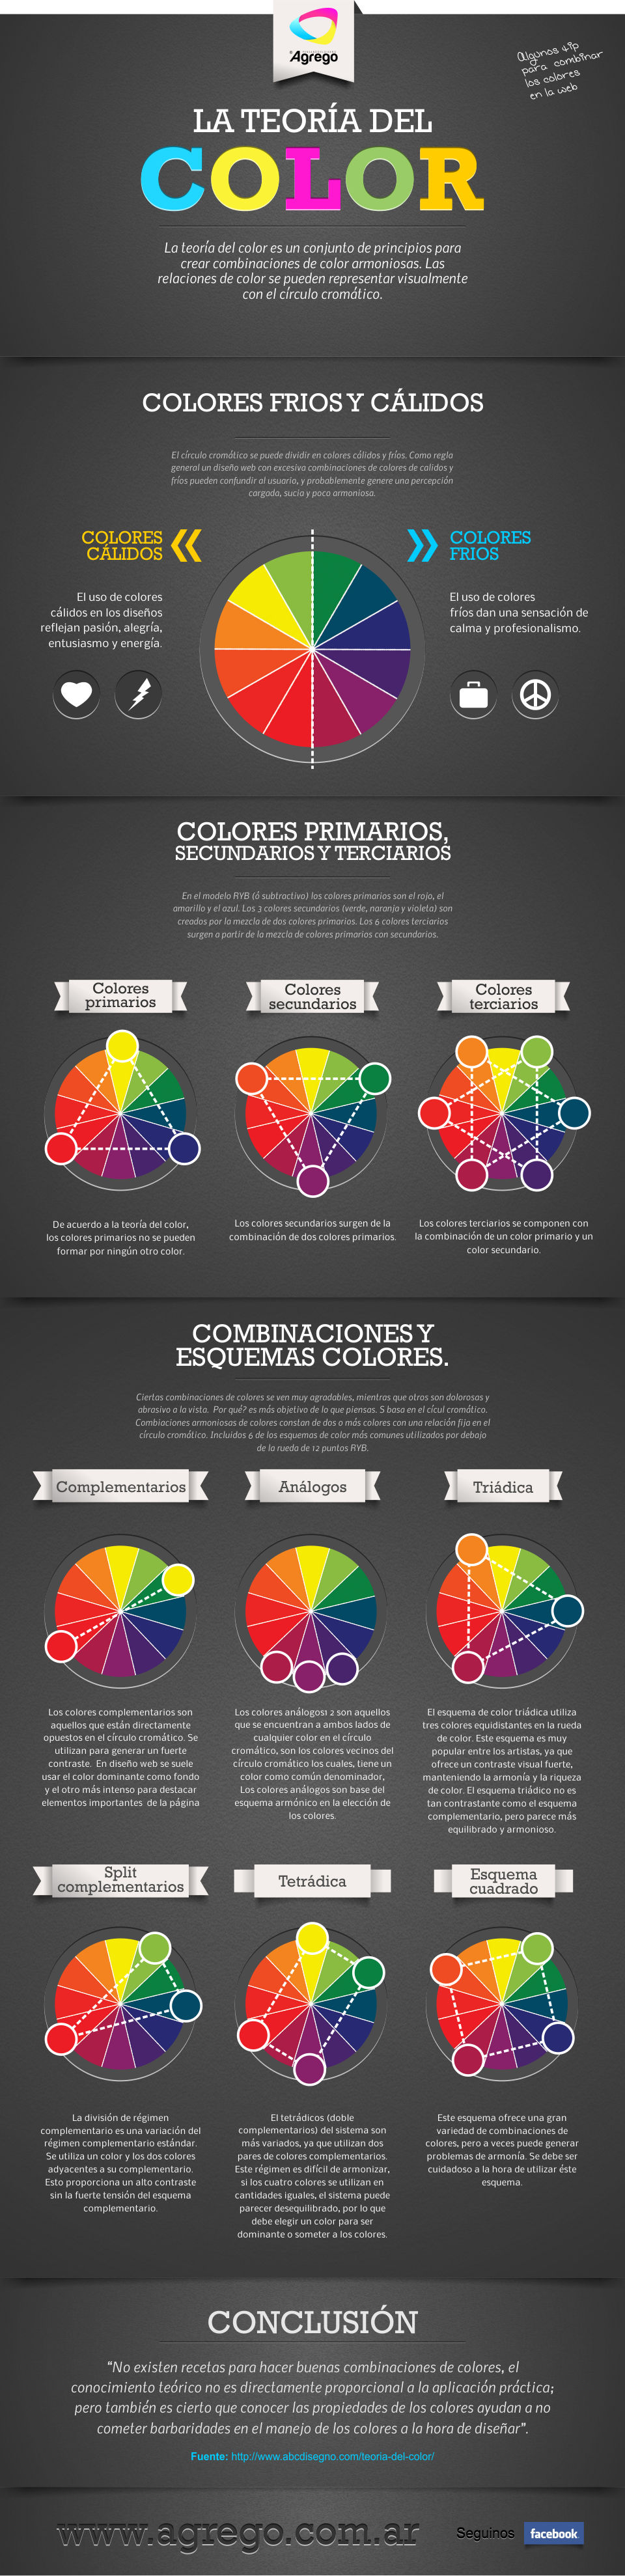 Teoría de los colores y recomendaciones para combinar colores en la web 1